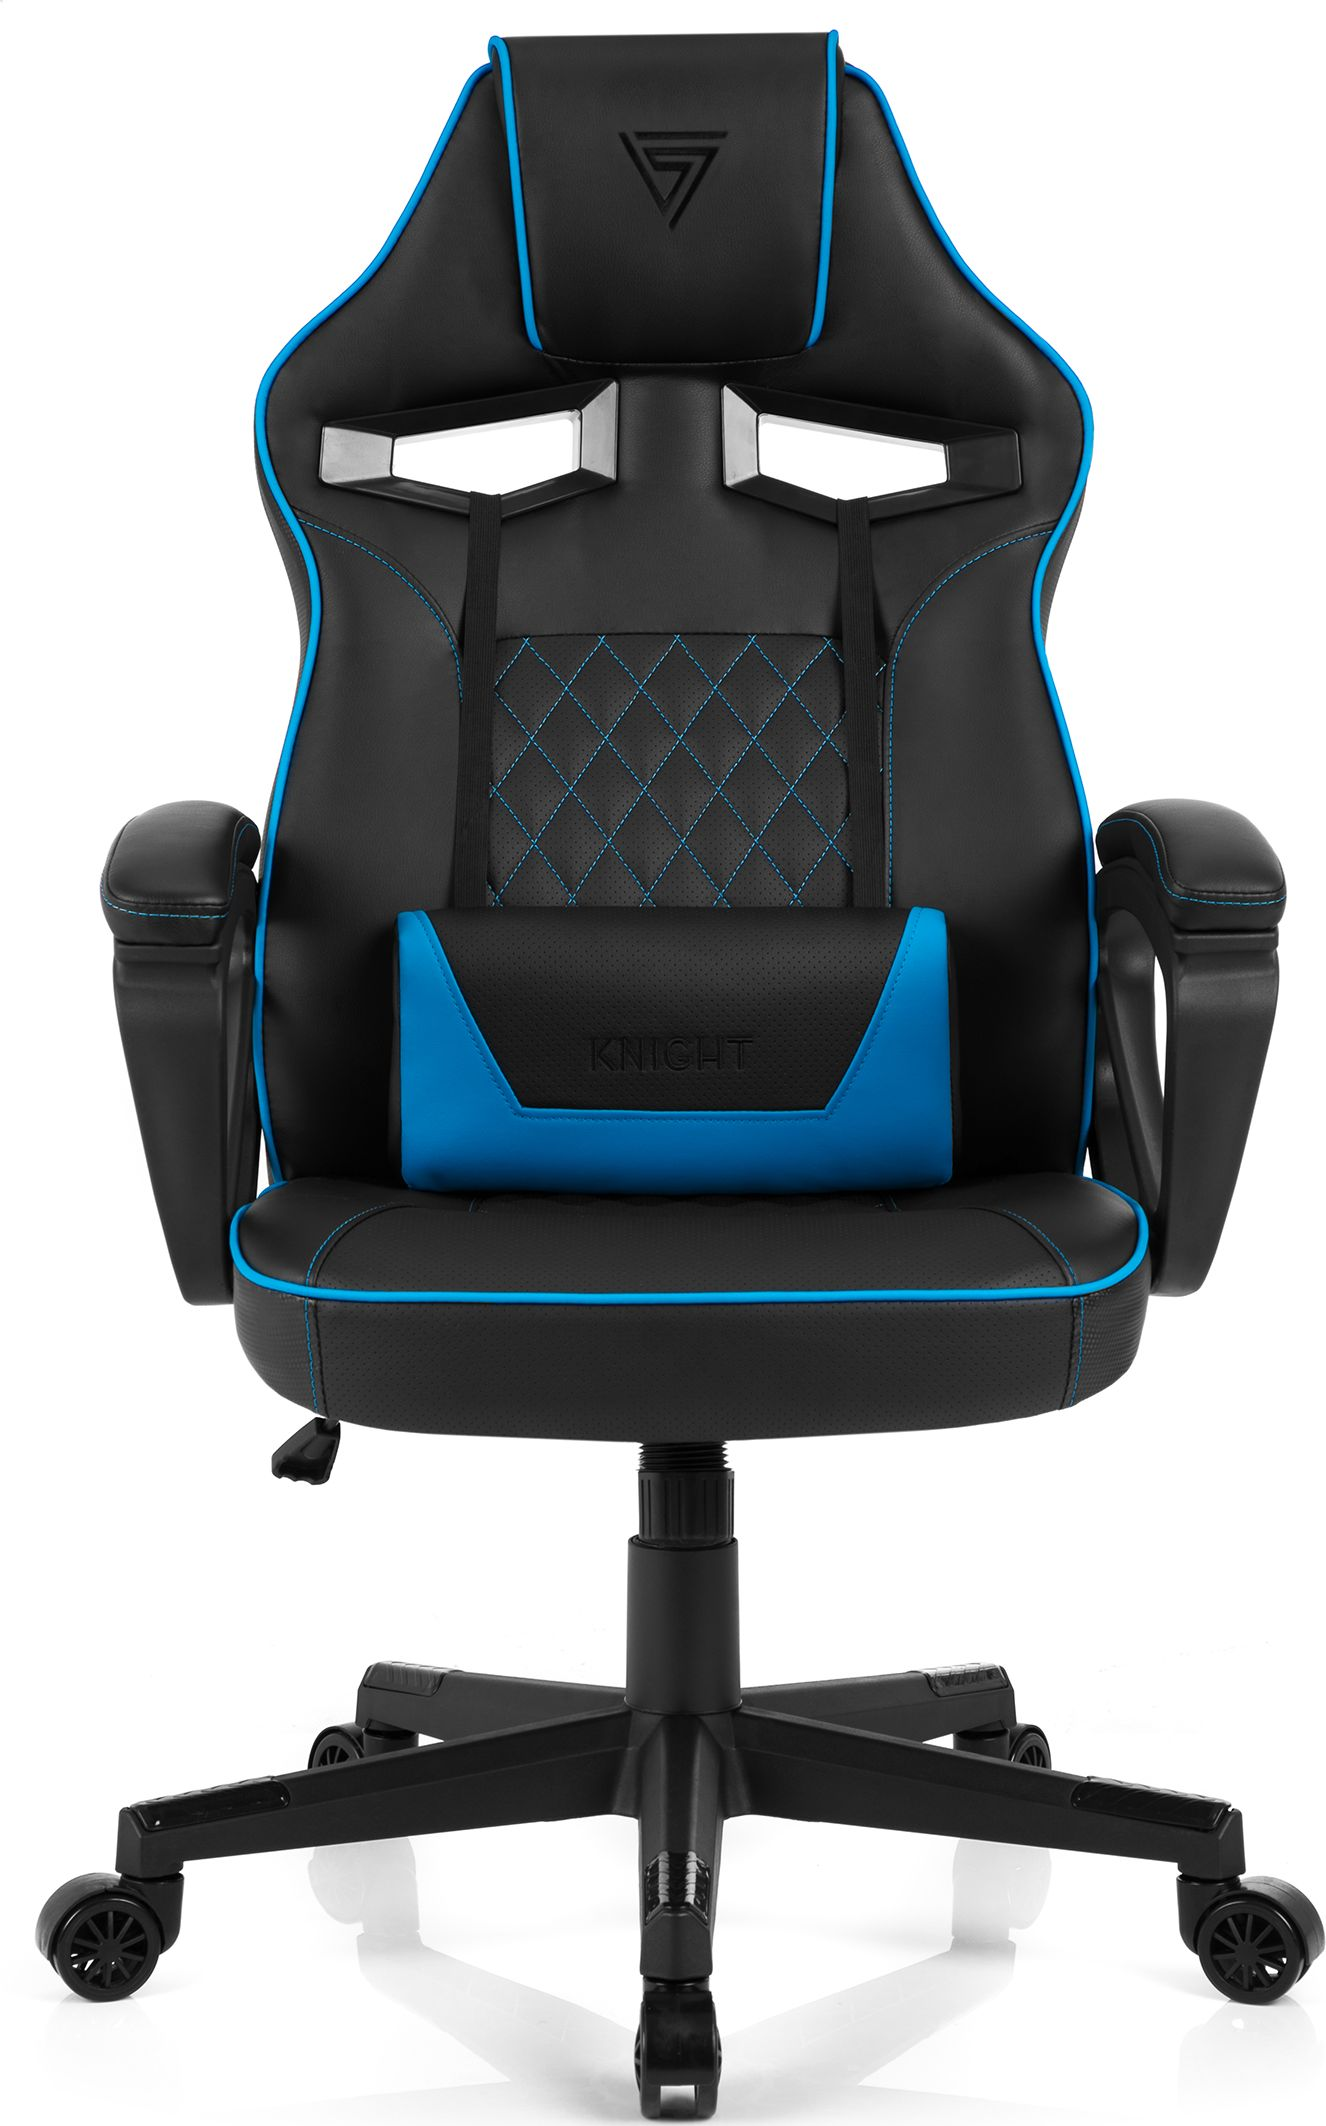 Schwarz Stühle SENSE7 SENSE7 + set, blau schwarz Gaming Knight accessories